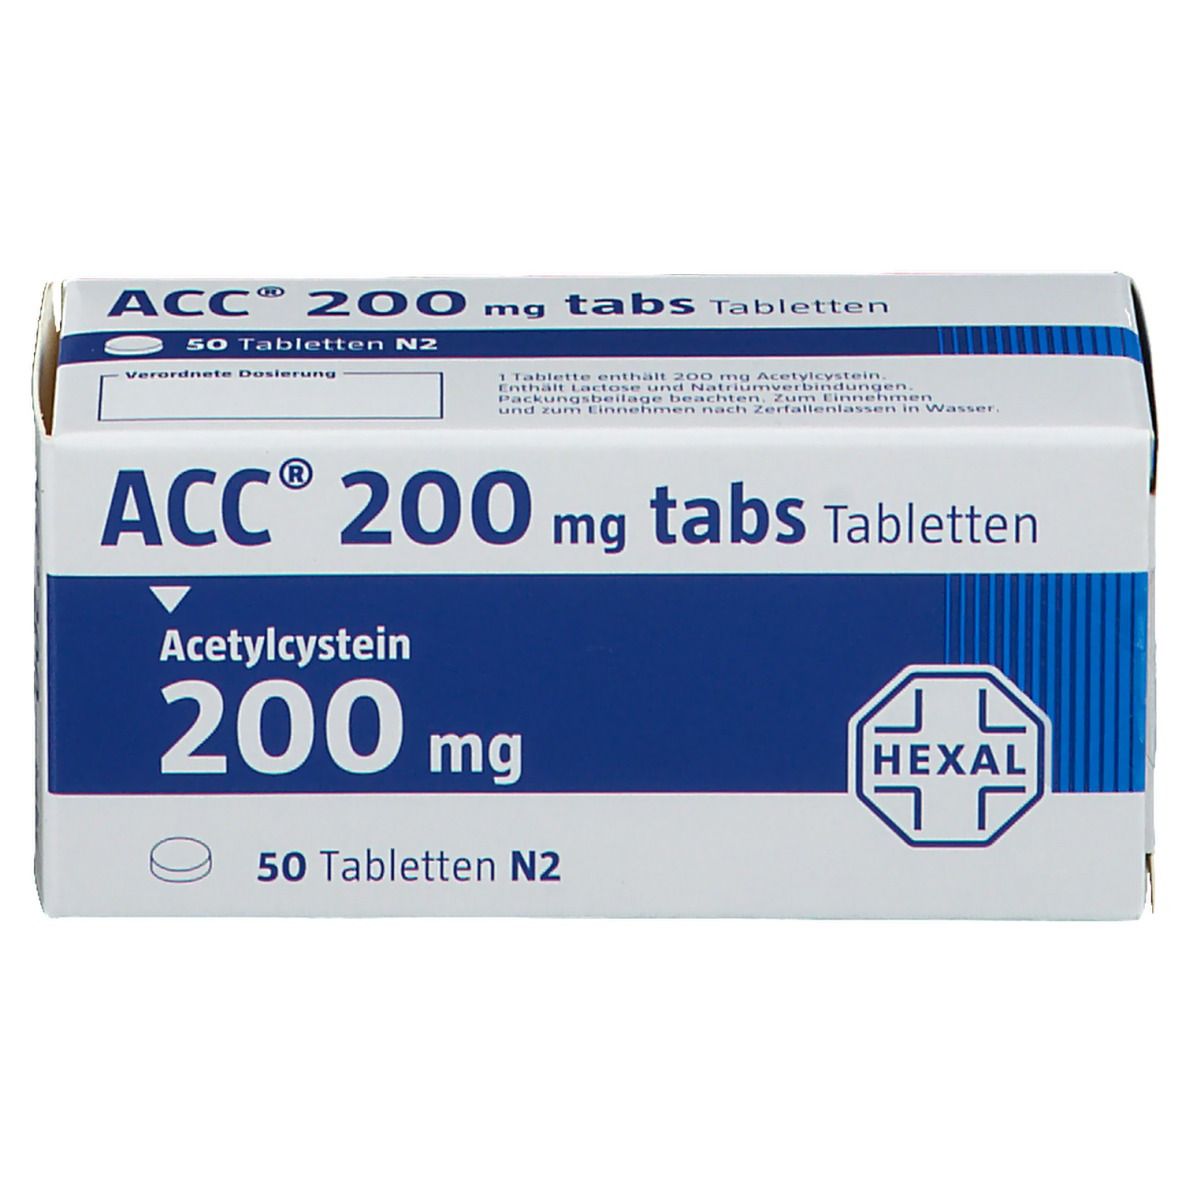 ACC® 200 mg tabs